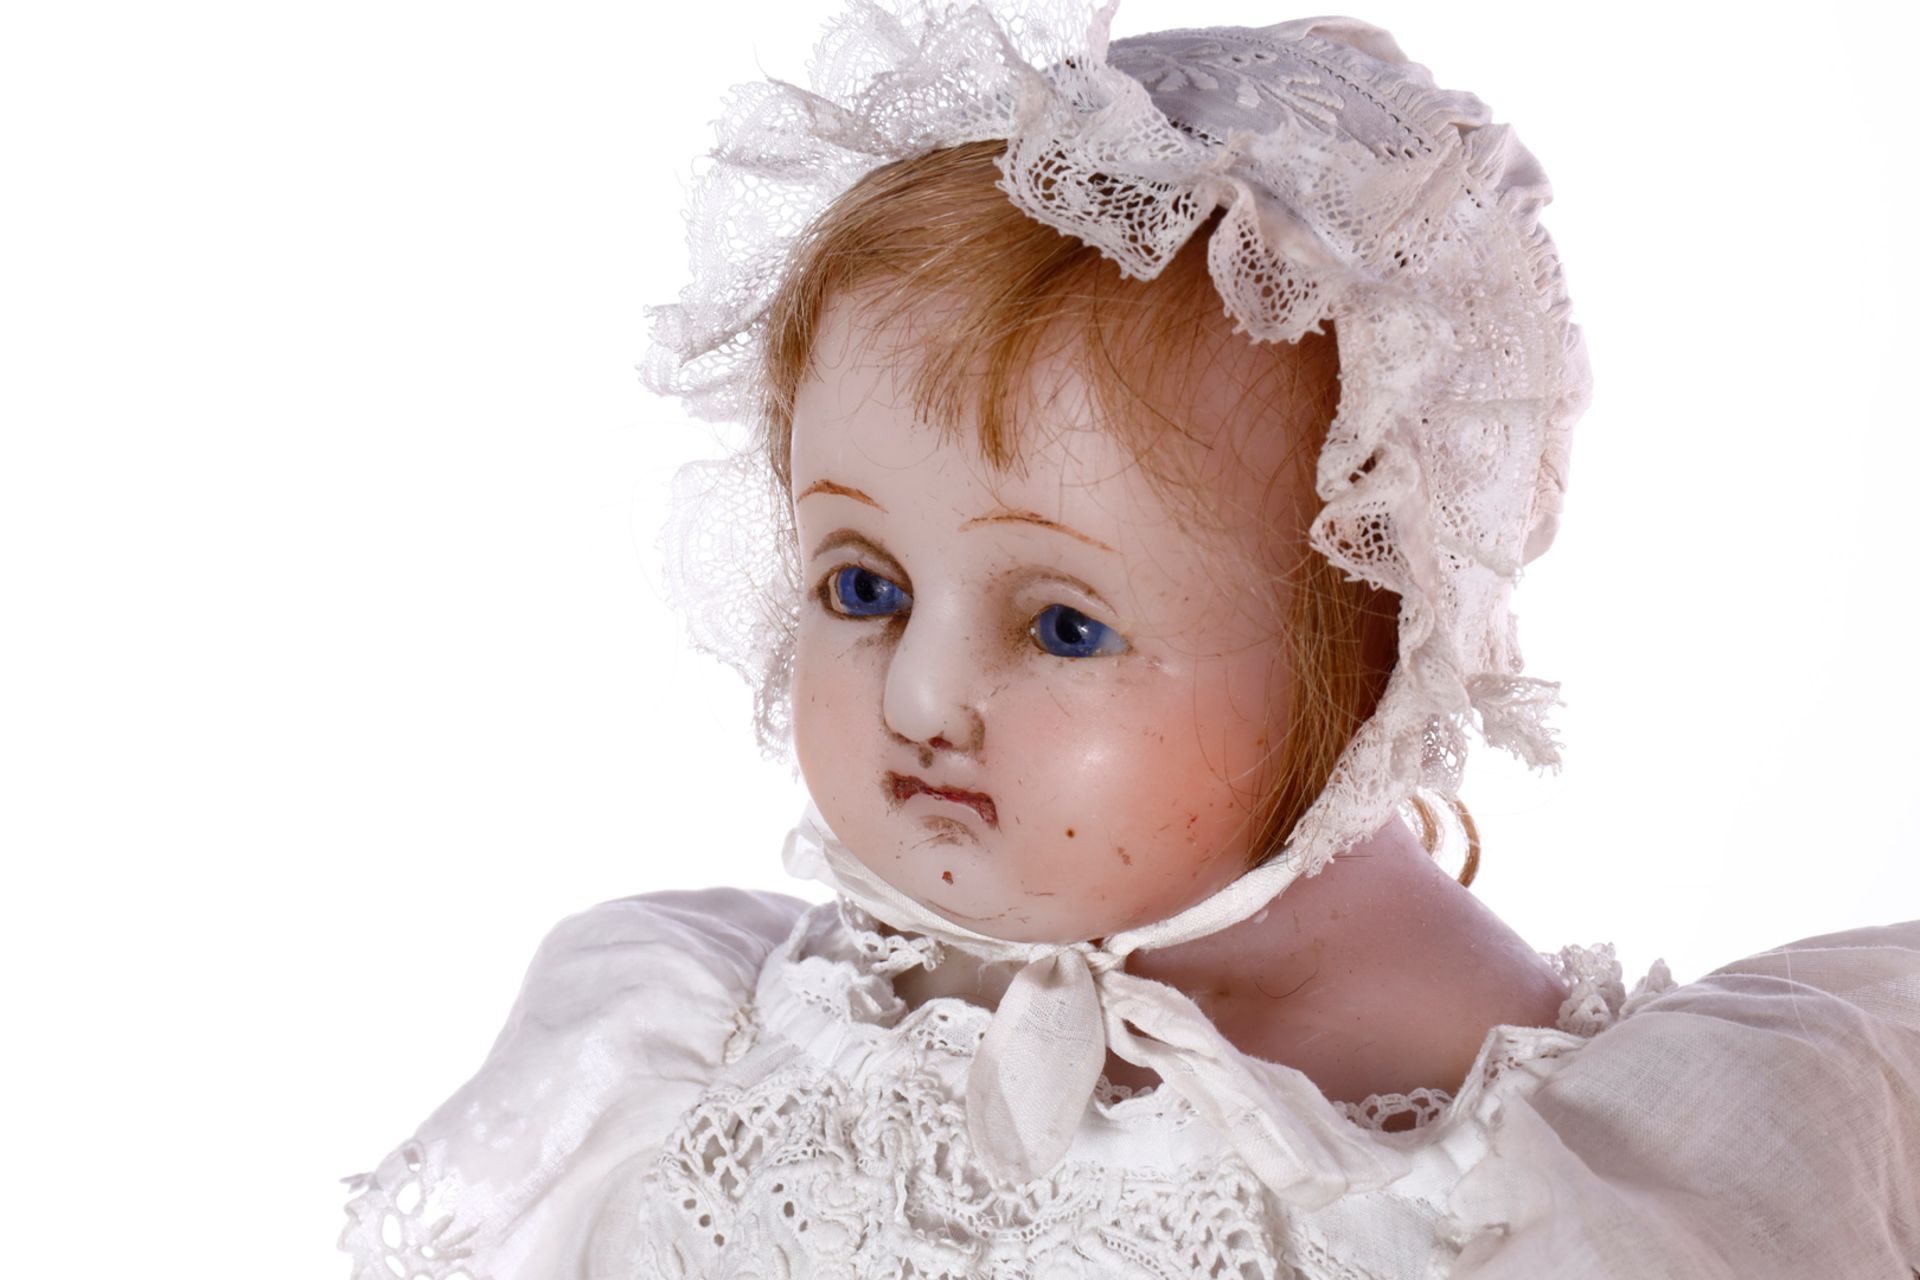 Englische Wachs-Brustplattkopf-Puppe um 1870, eingesetzte Glasaugen, Perücke teilweise - Image 2 of 6